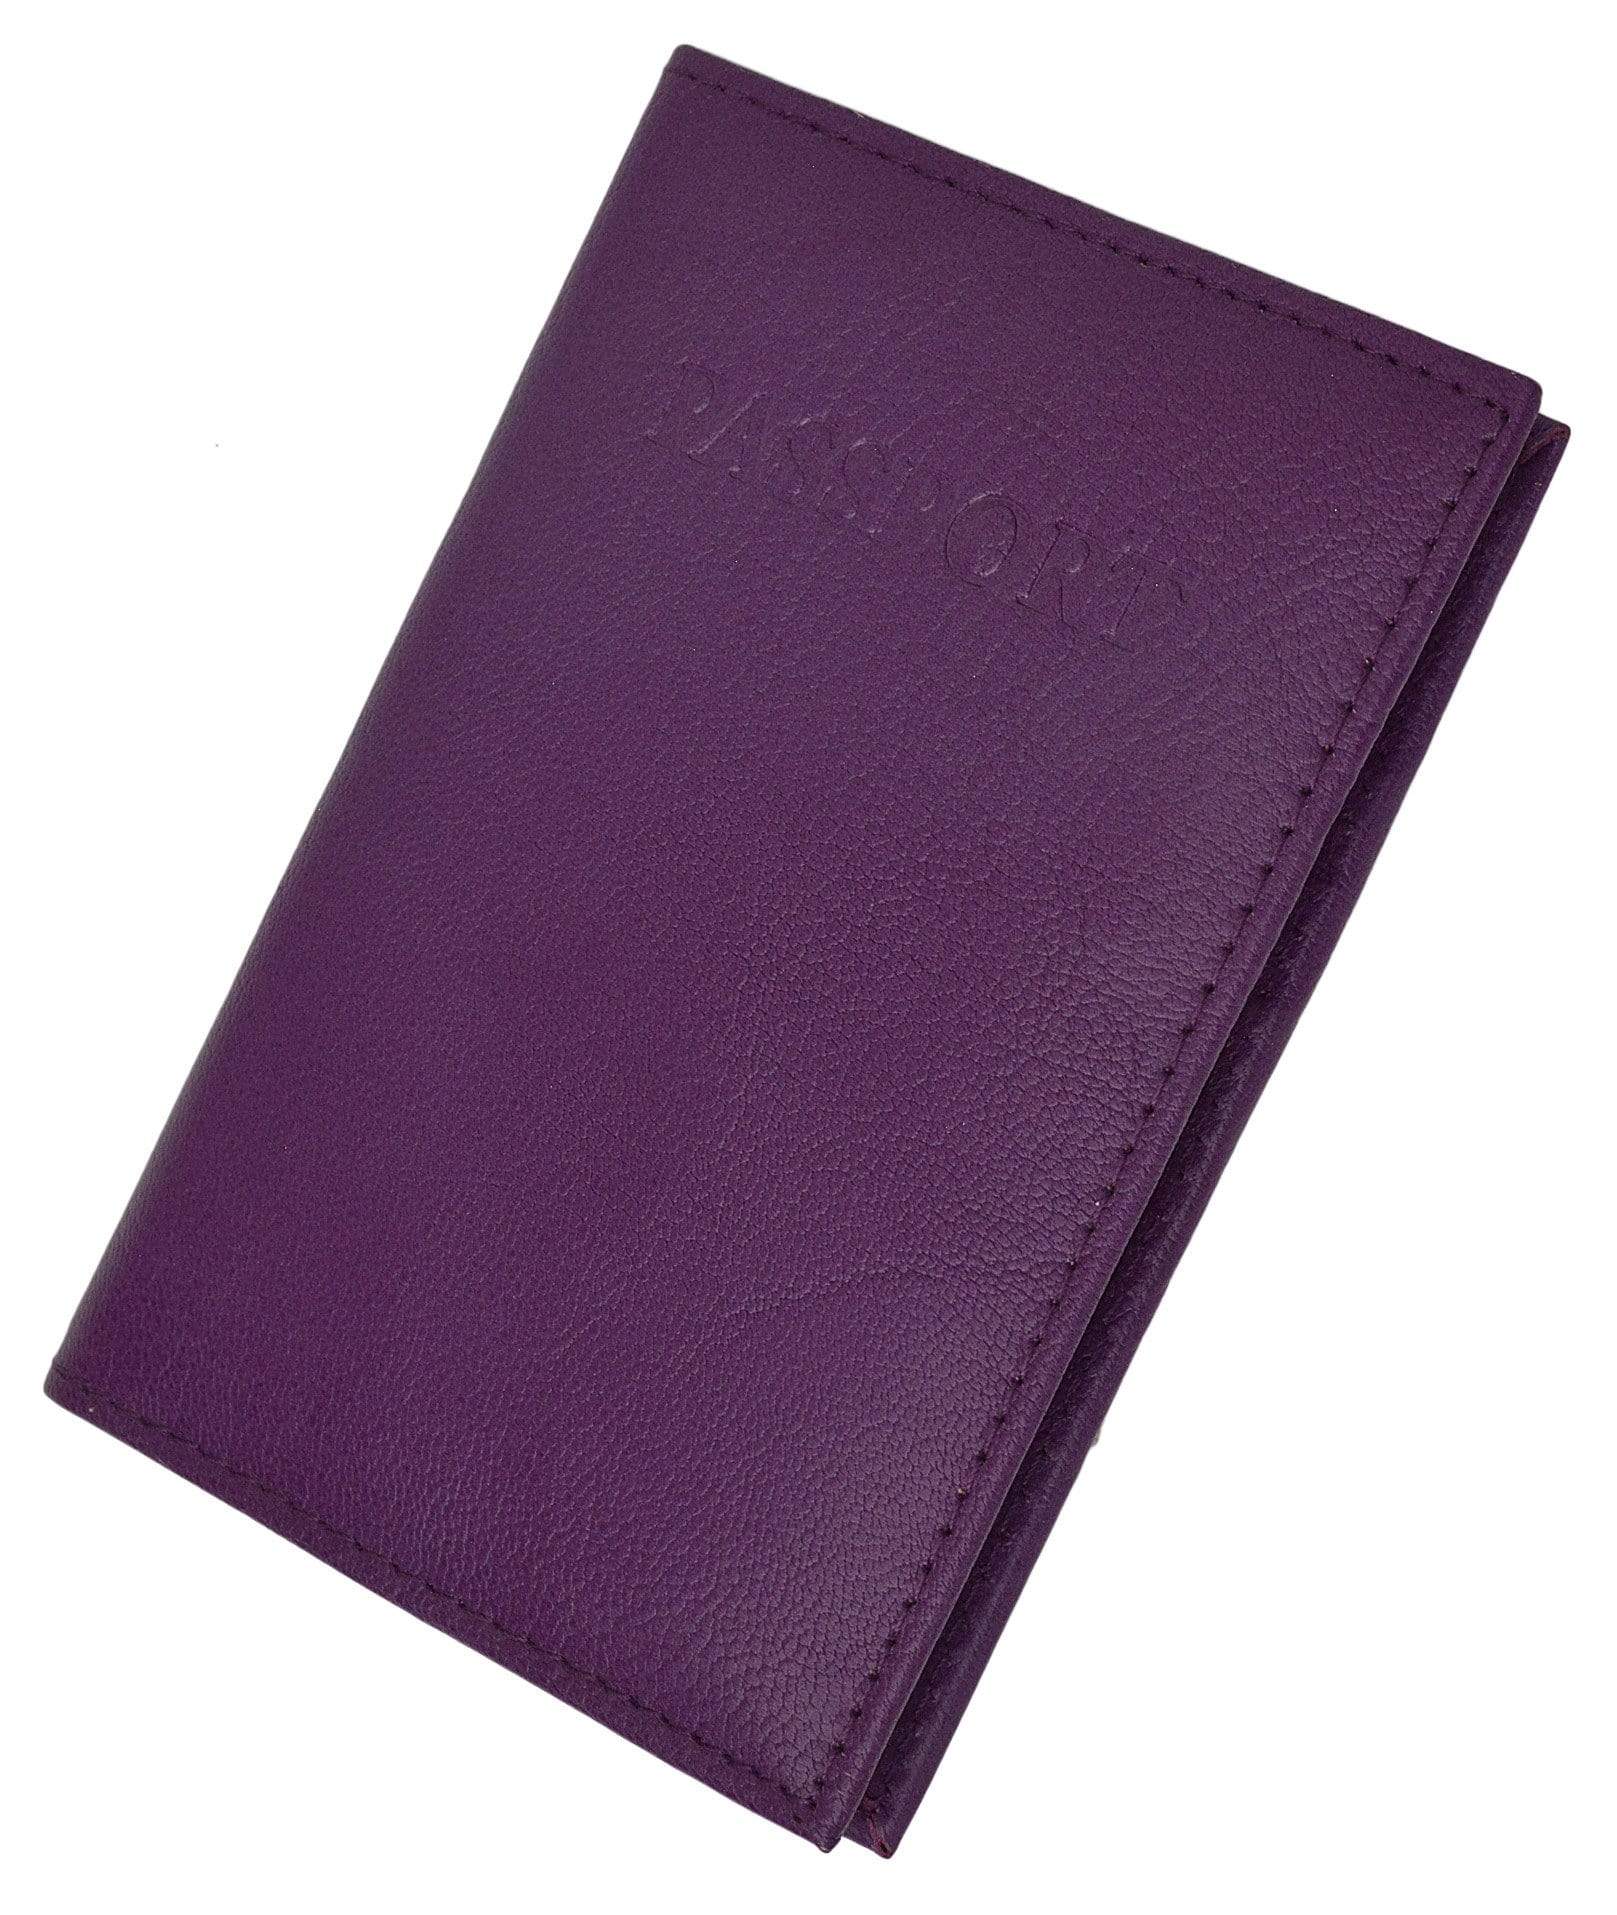 Louis Vuitton Genuine Leather Passport Wallet